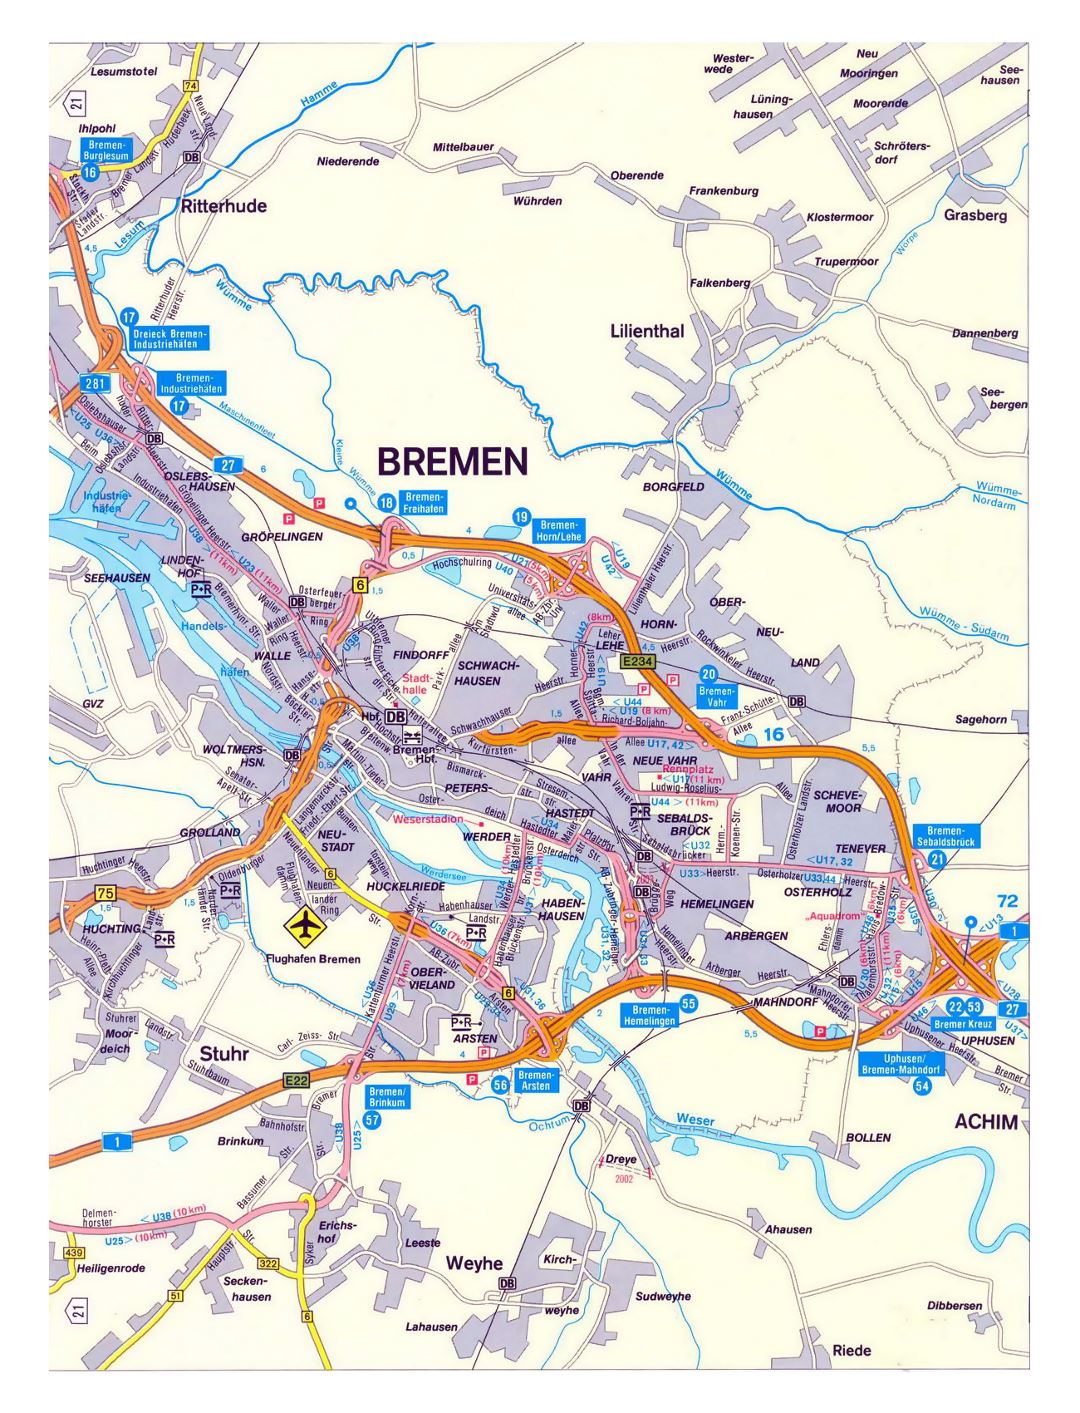 Gran hoja de ruta detallada de la ciudad de Bremen con otras marcas